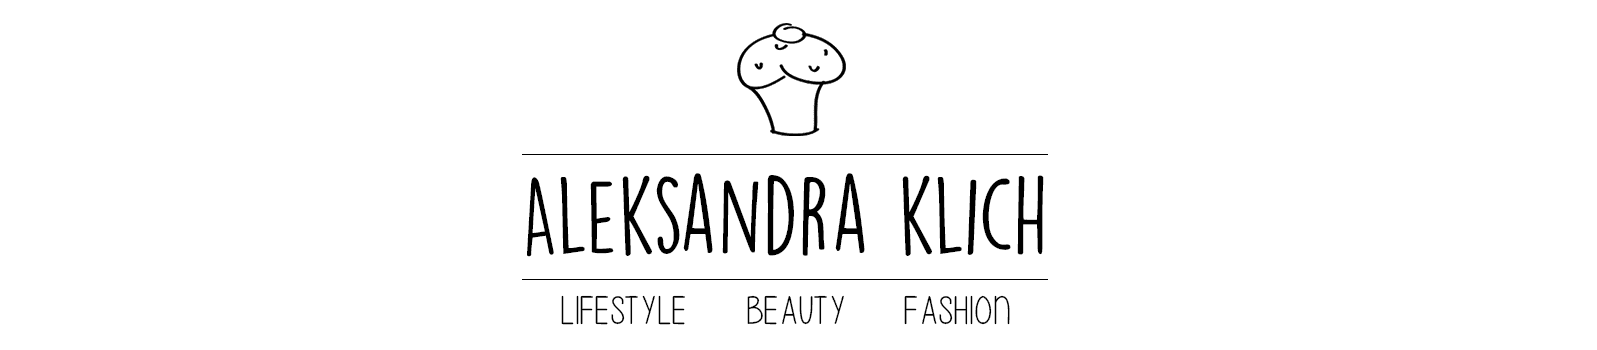 aleksandra klich | lifestyle, beauty, fashion